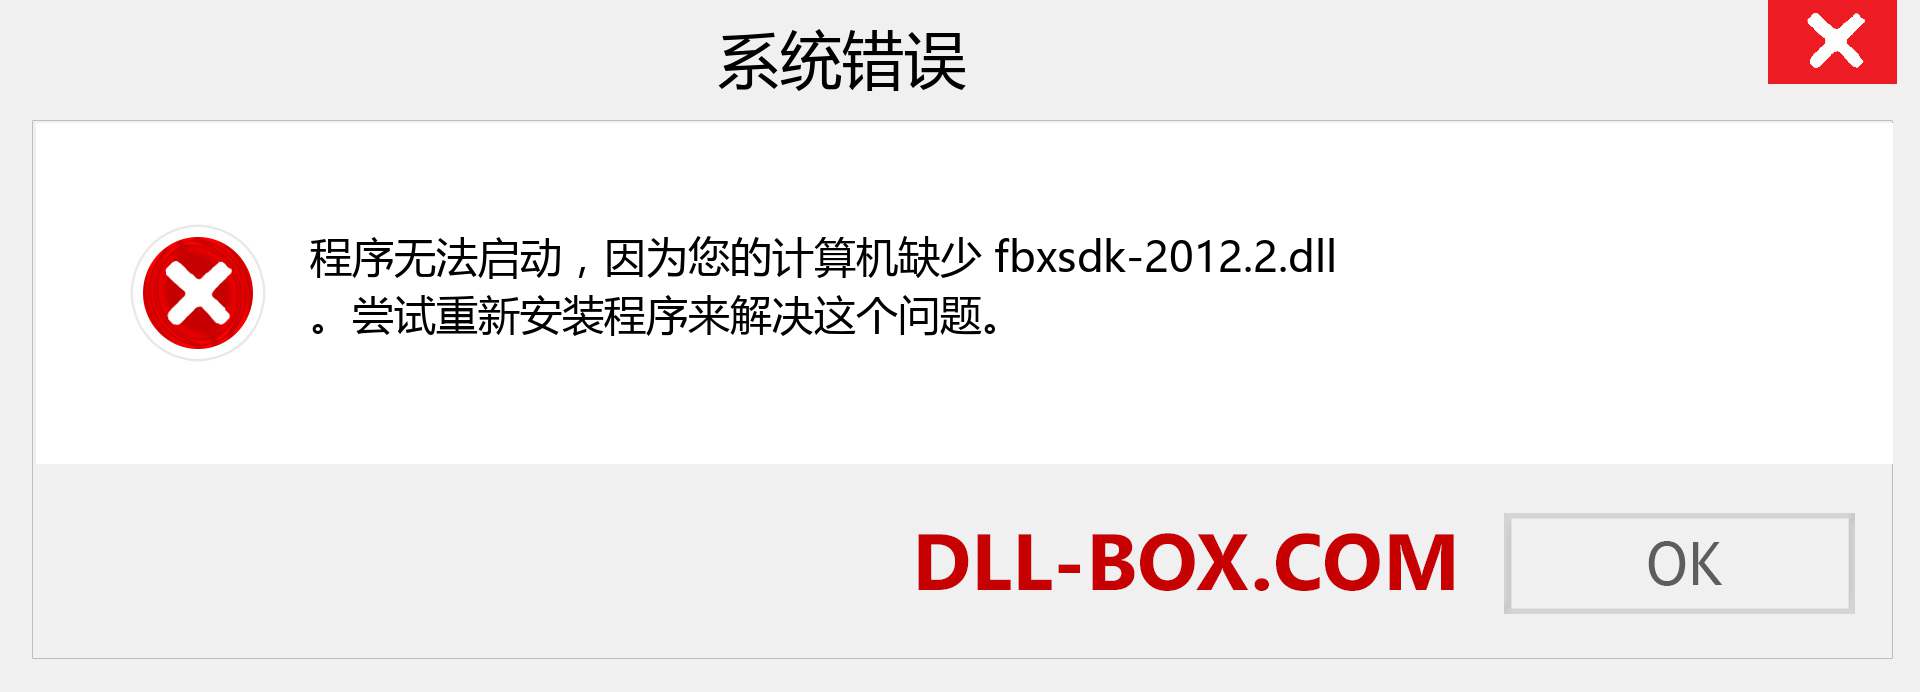 fbxsdk-2012.2.dll 文件丢失？。 适用于 Windows 7、8、10 的下载 - 修复 Windows、照片、图像上的 fbxsdk-2012.2 dll 丢失错误